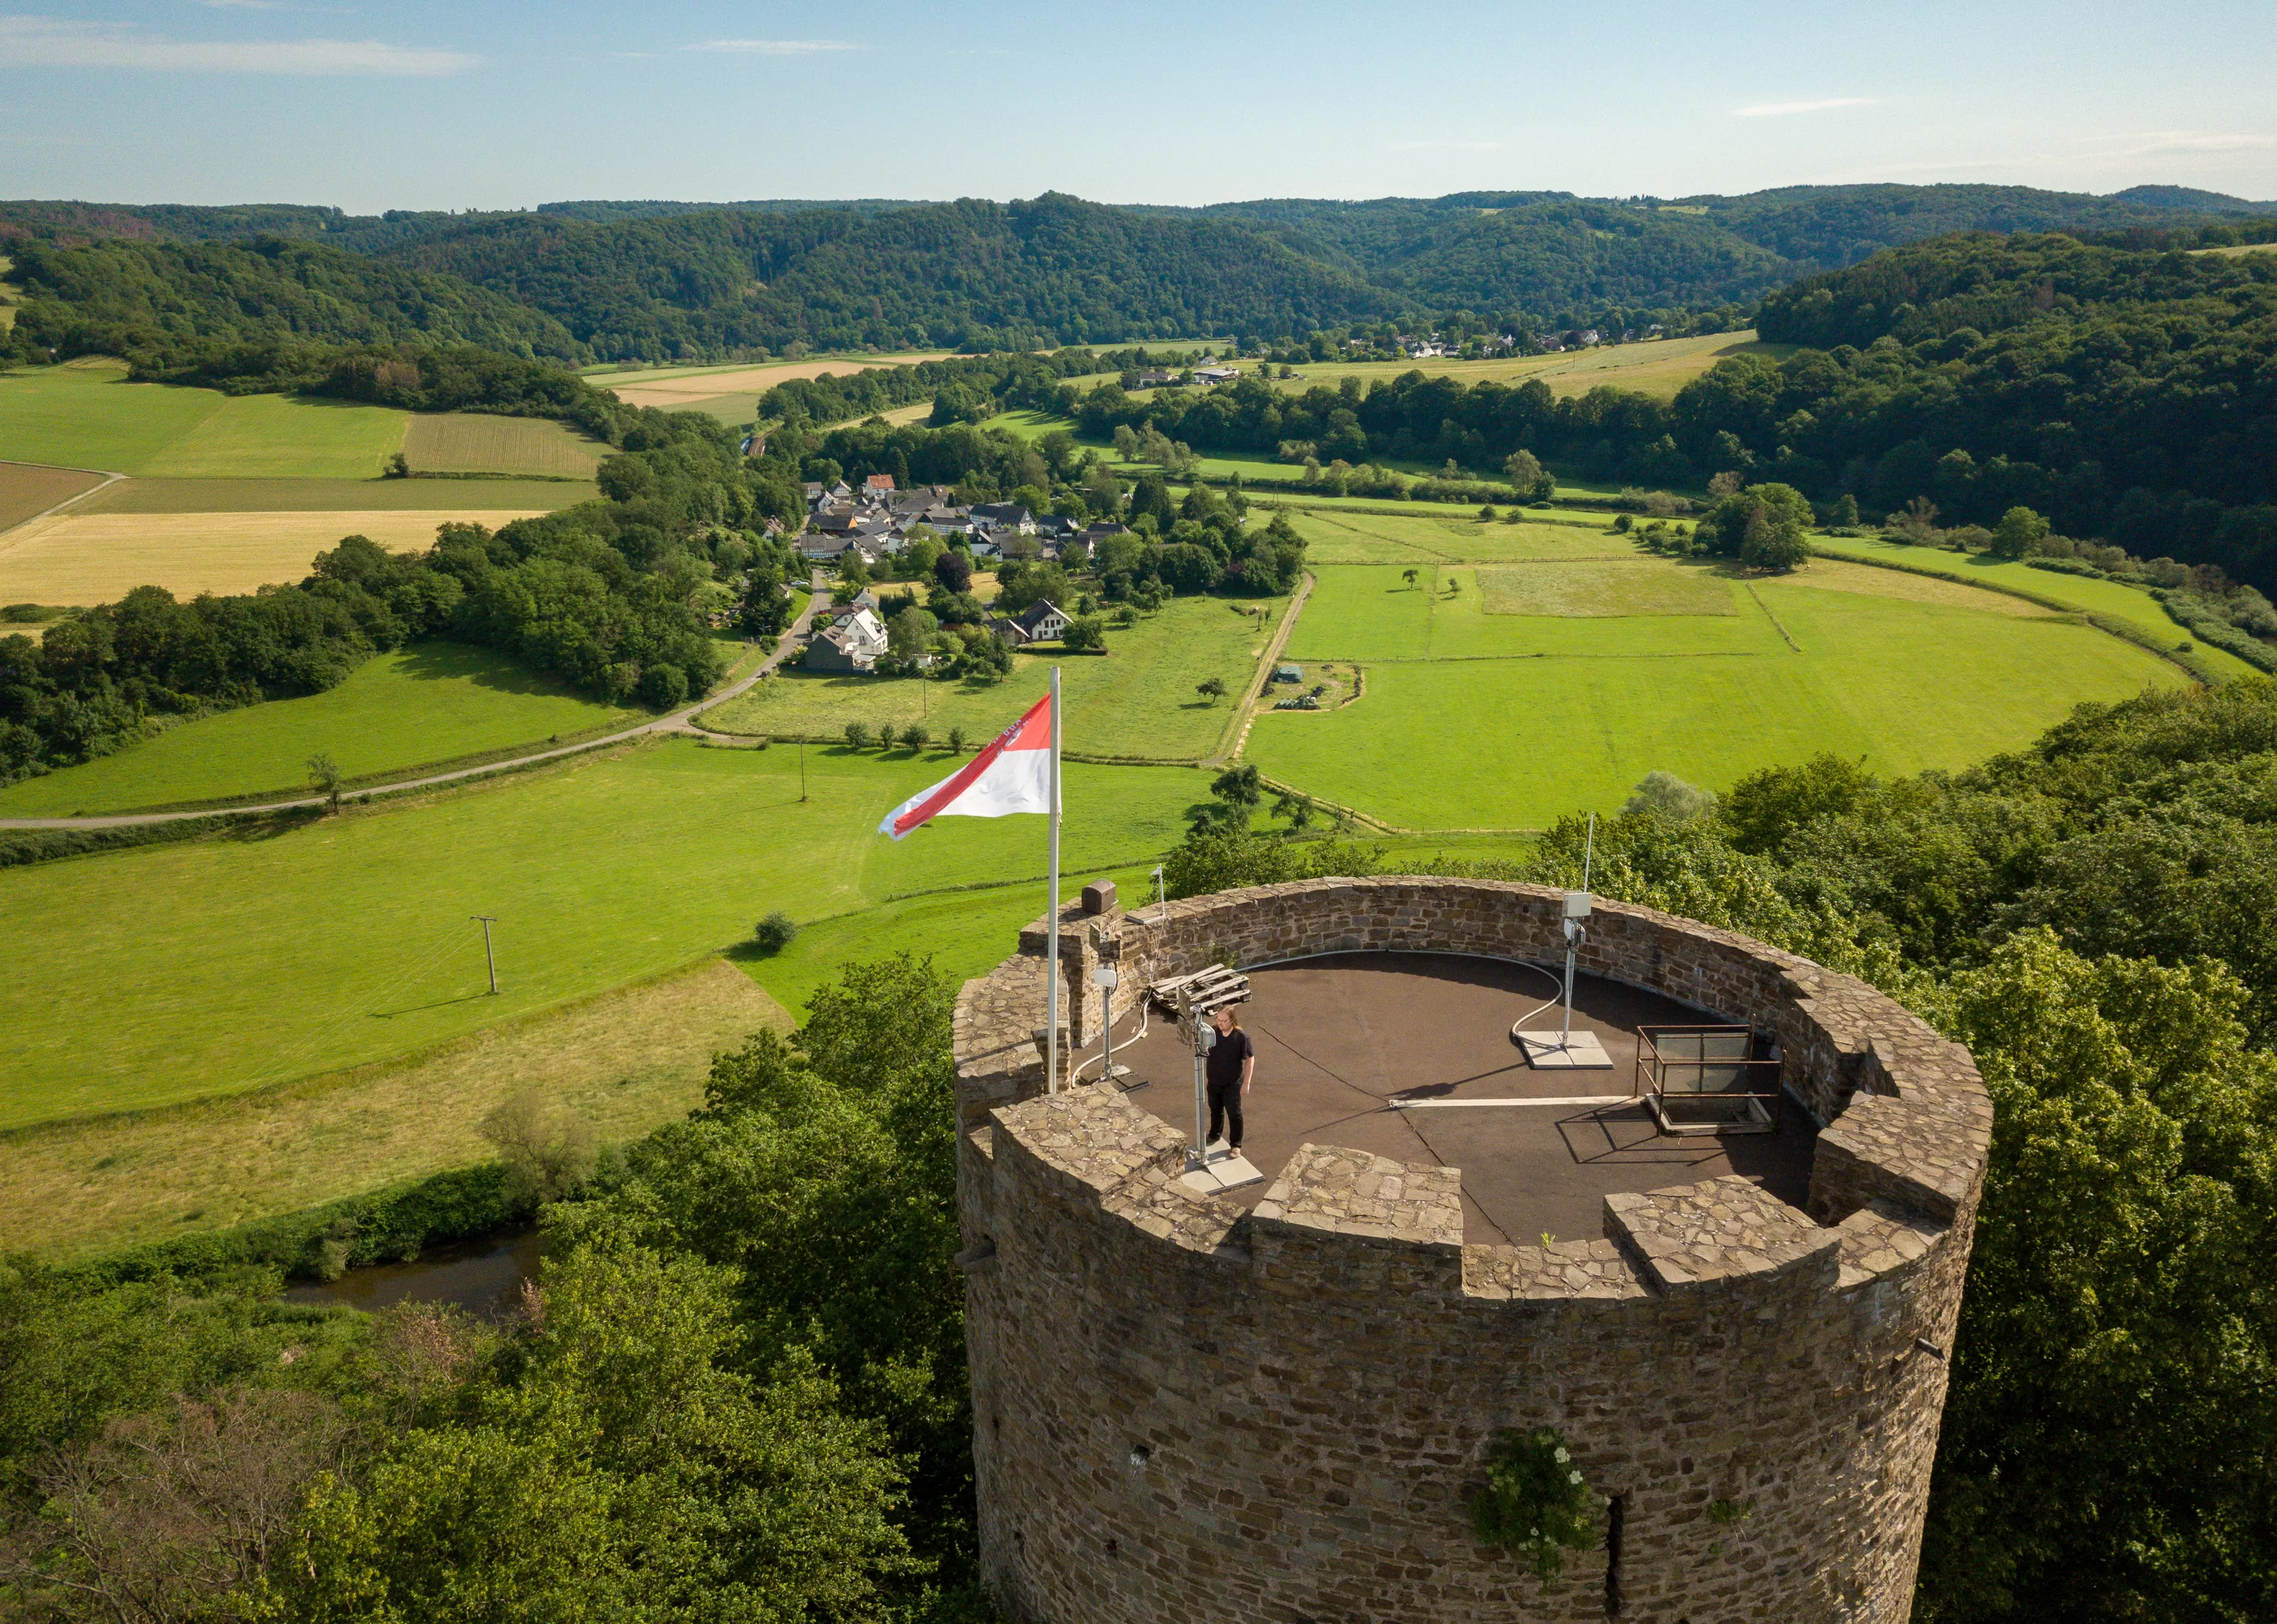 Caspar Armster von den Freien Netzwerkern Hennef auf der Burg Blankenberg. Das Foto wurde von einer Drohne aufgenommen. Neben dem Turm der Burg kann man noch in die Ferne sehen, in der sich zwischen viel grün vereinzelte Häusersiedlungen befinden.